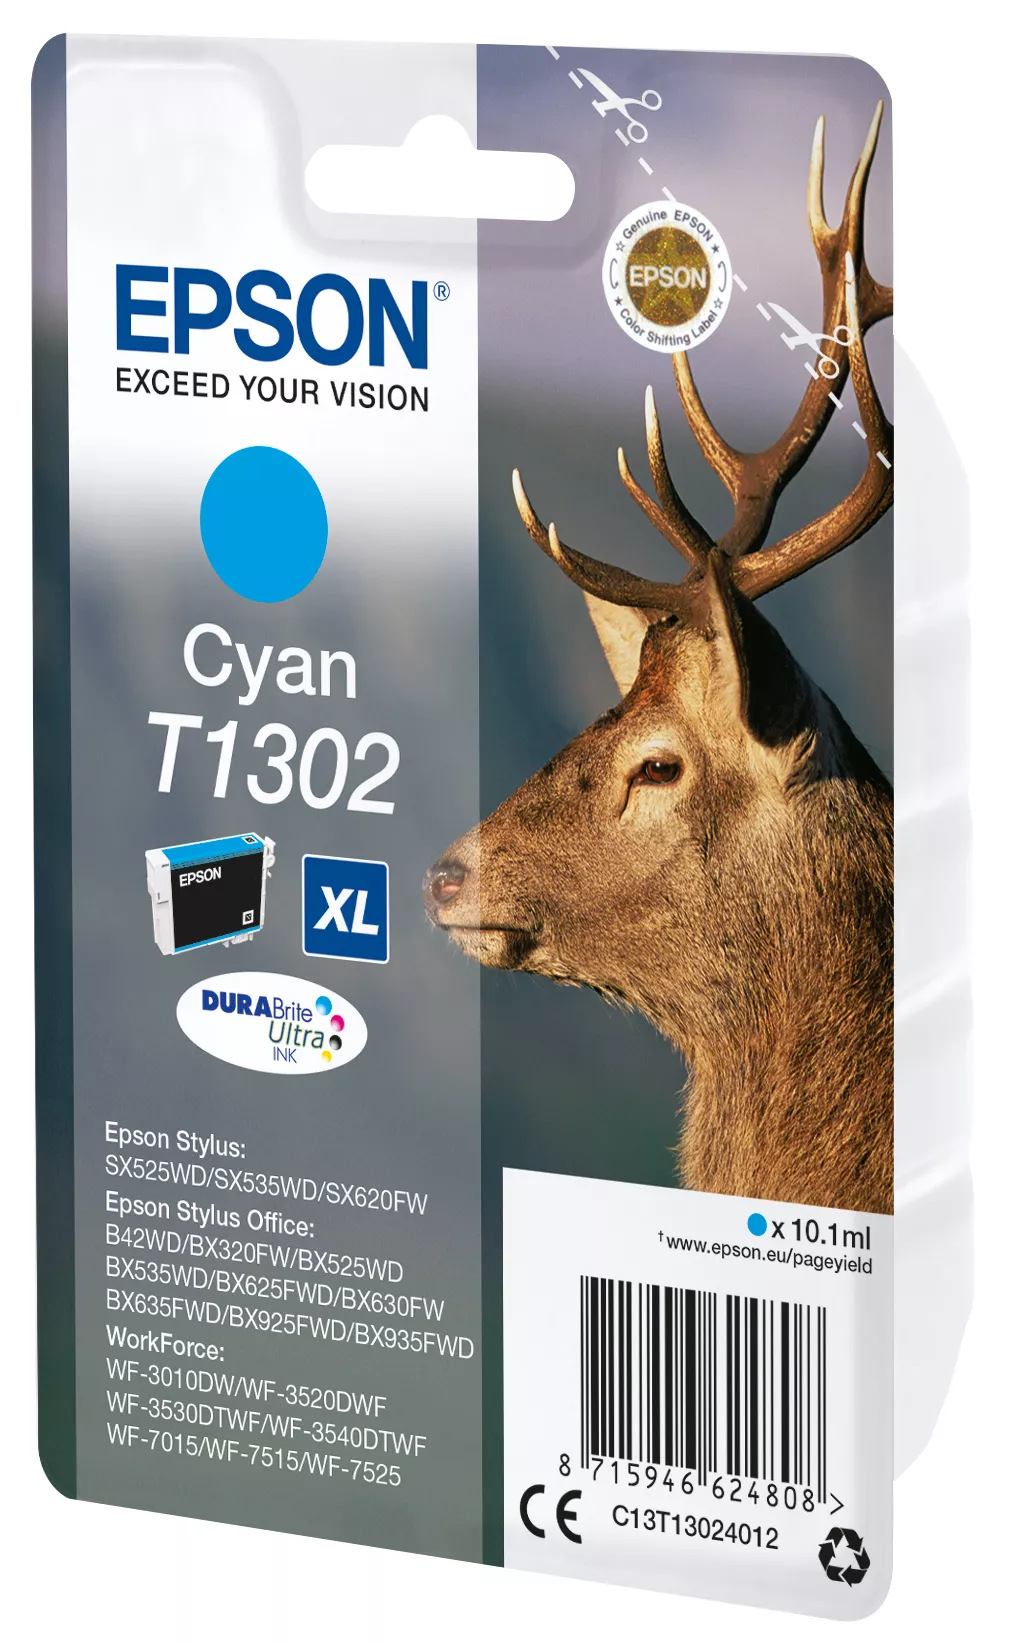 Vente EPSON T1302 cartouche d encre cyan très haute Epson au meilleur prix - visuel 2